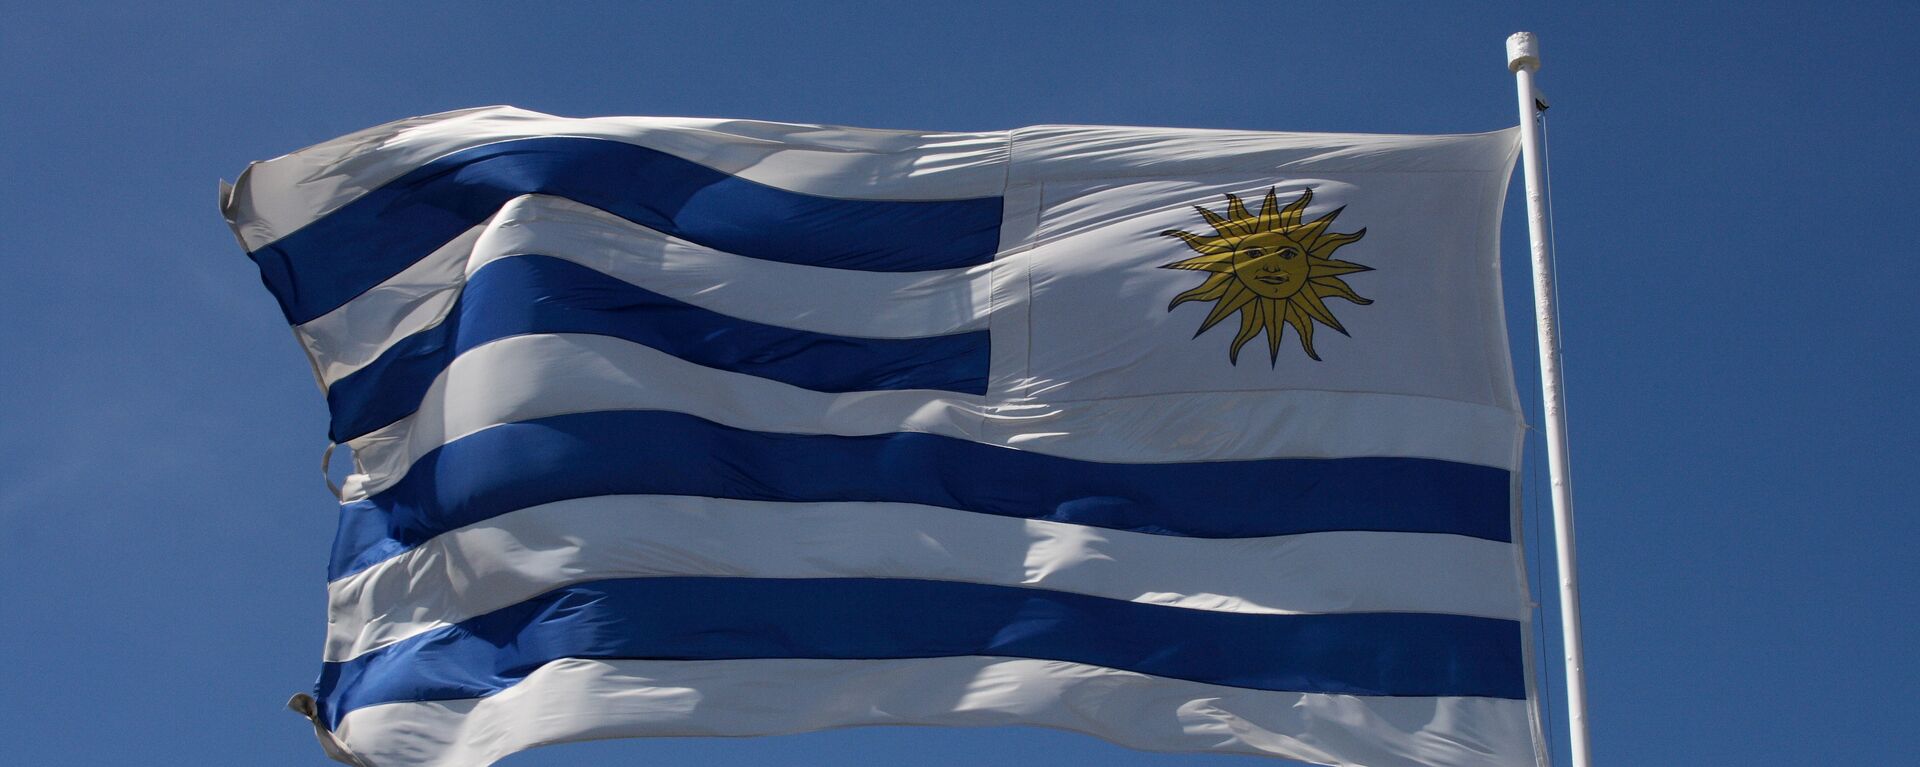 La bandera de Uruguay - Sputnik Mundo, 1920, 15.09.2021